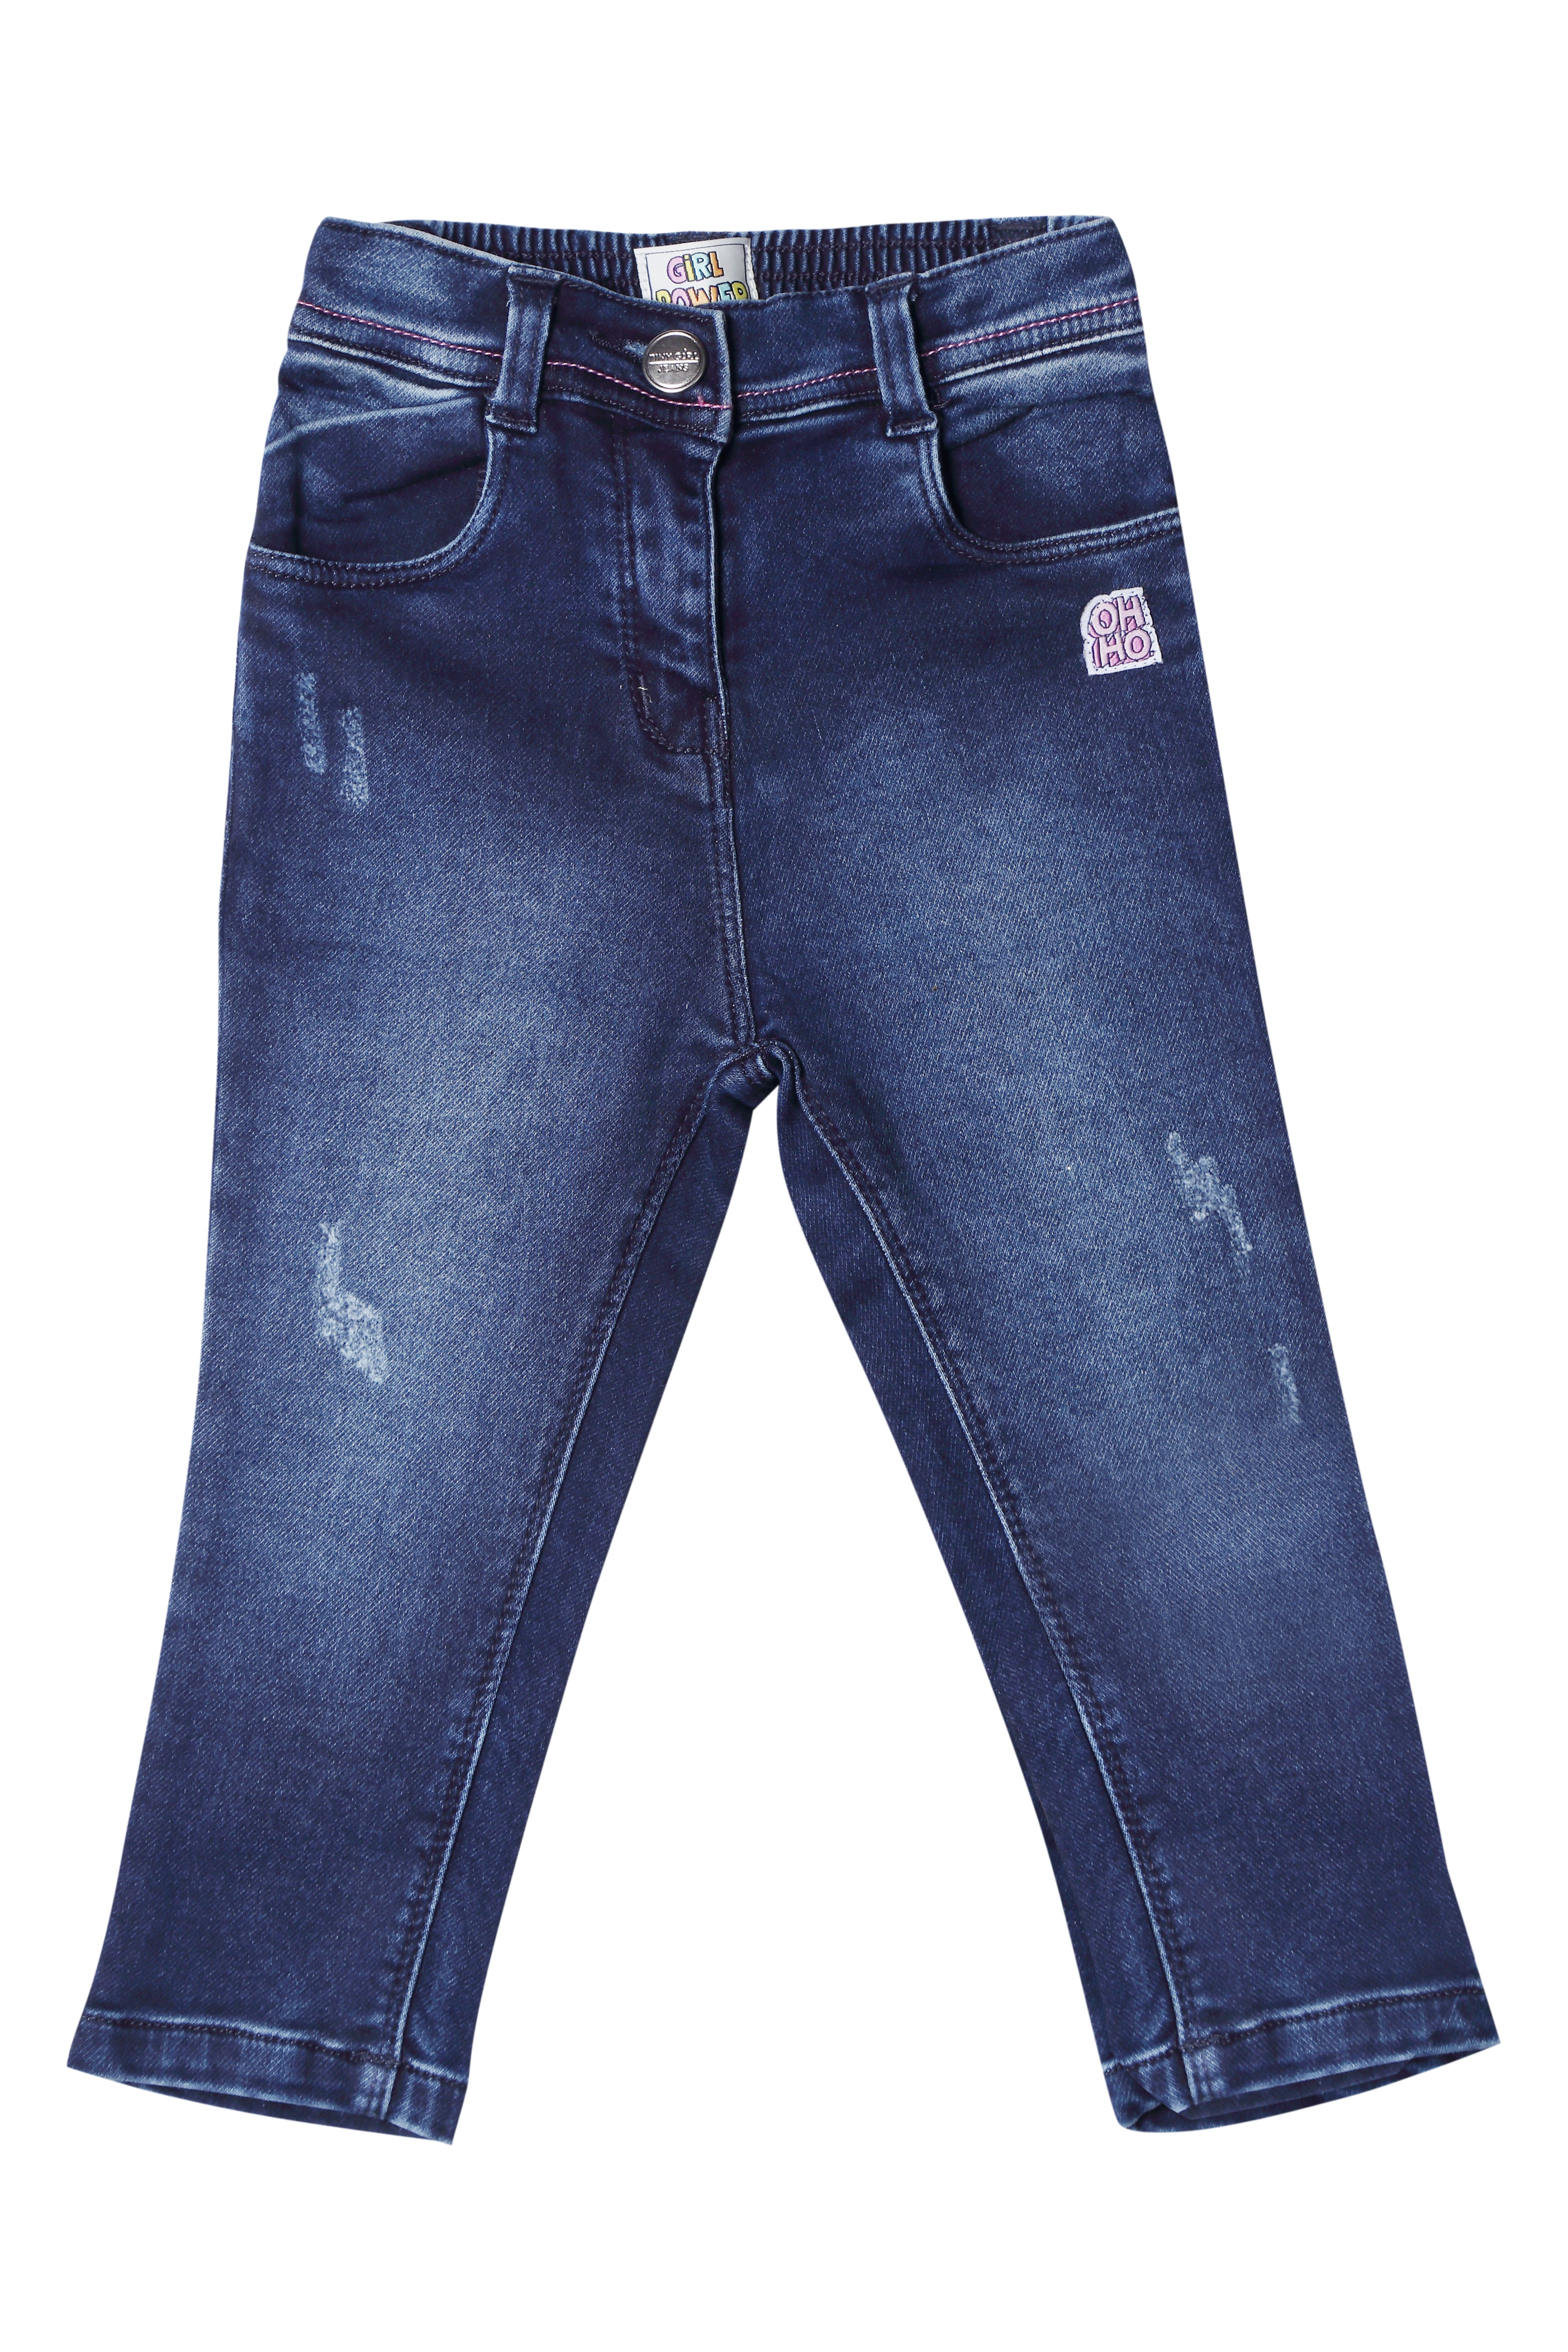 Marsh-X Slim Men Dark Blue Jeans - Buy Marsh-X Slim Men Dark Blue Jeans  Online at Best Prices in India | Flipkart.com